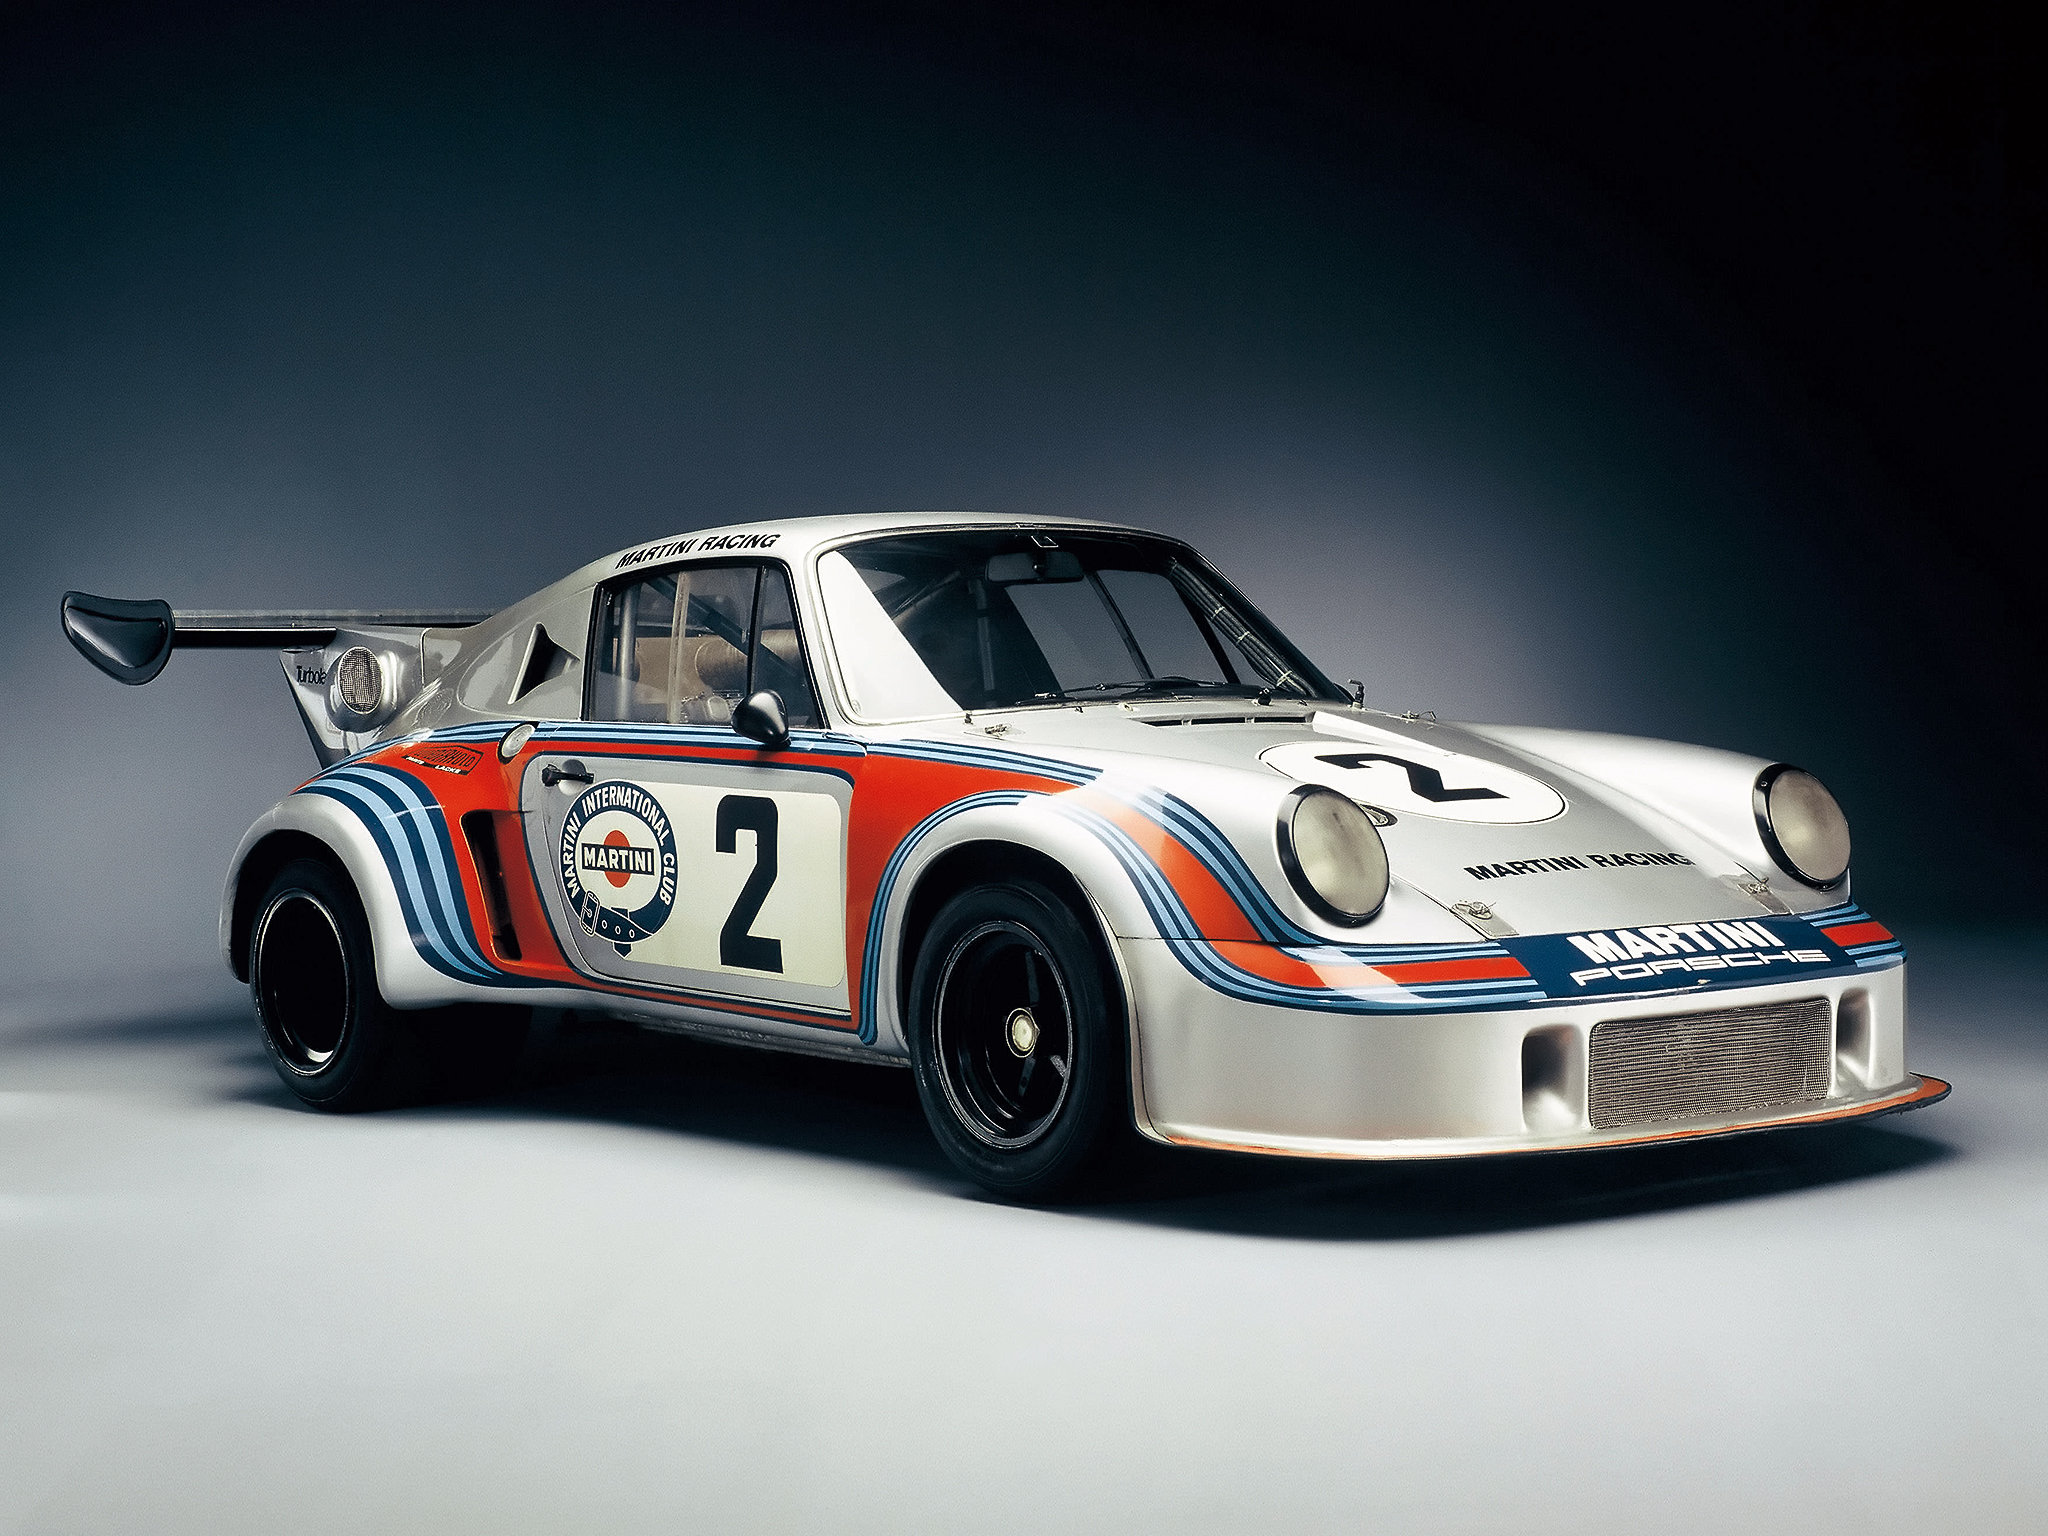 1974, Porsche, 911, Carrera, Rsr, Turbo, Race, Racing, Supercar, Supercars, Classic, Fs Wallpaper